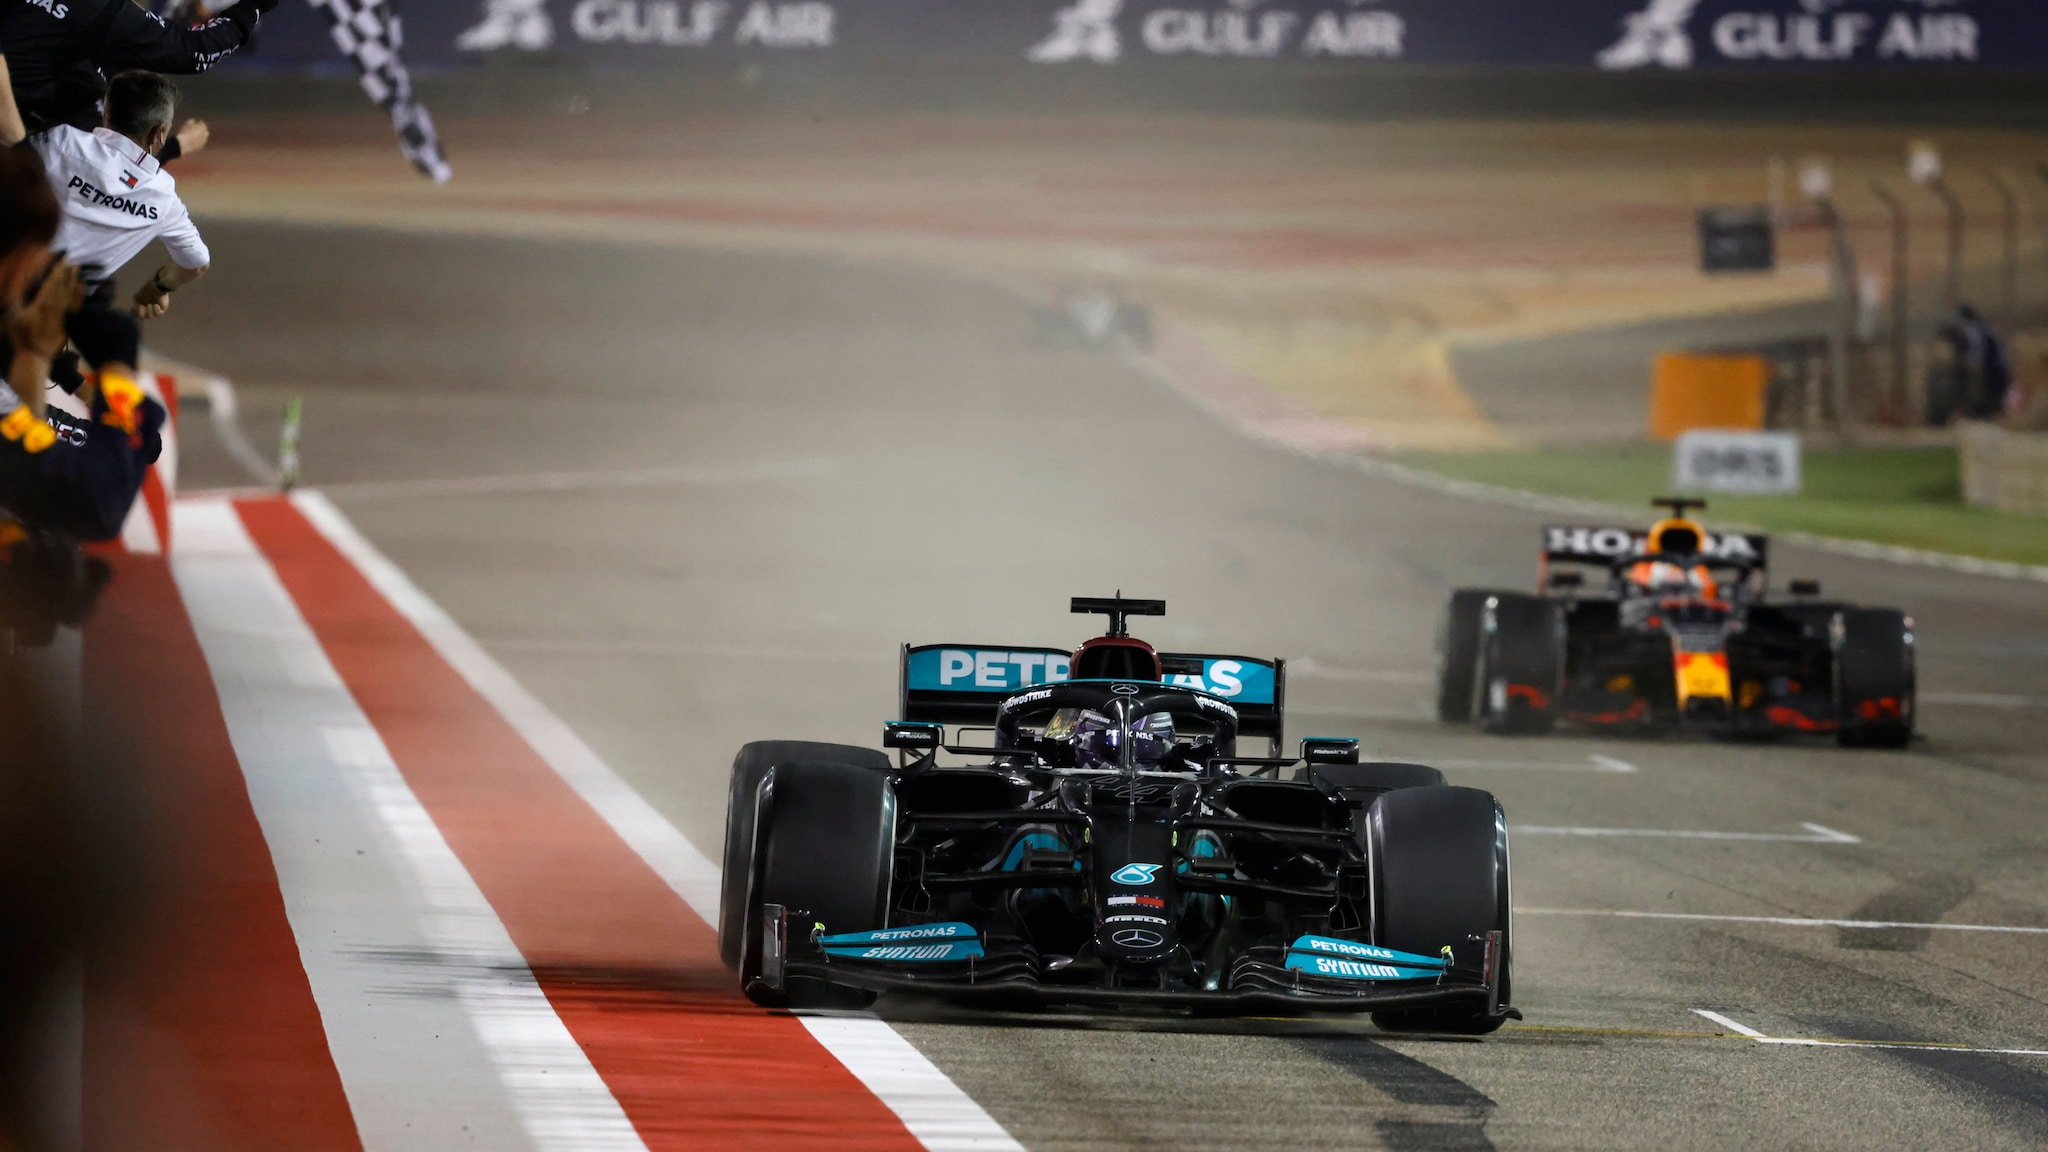  Lewis Hamilton De Mercedes A Remporté Un Match D'ouverture De La Saison Du Grand Prix De Bahreïn (Twitter)